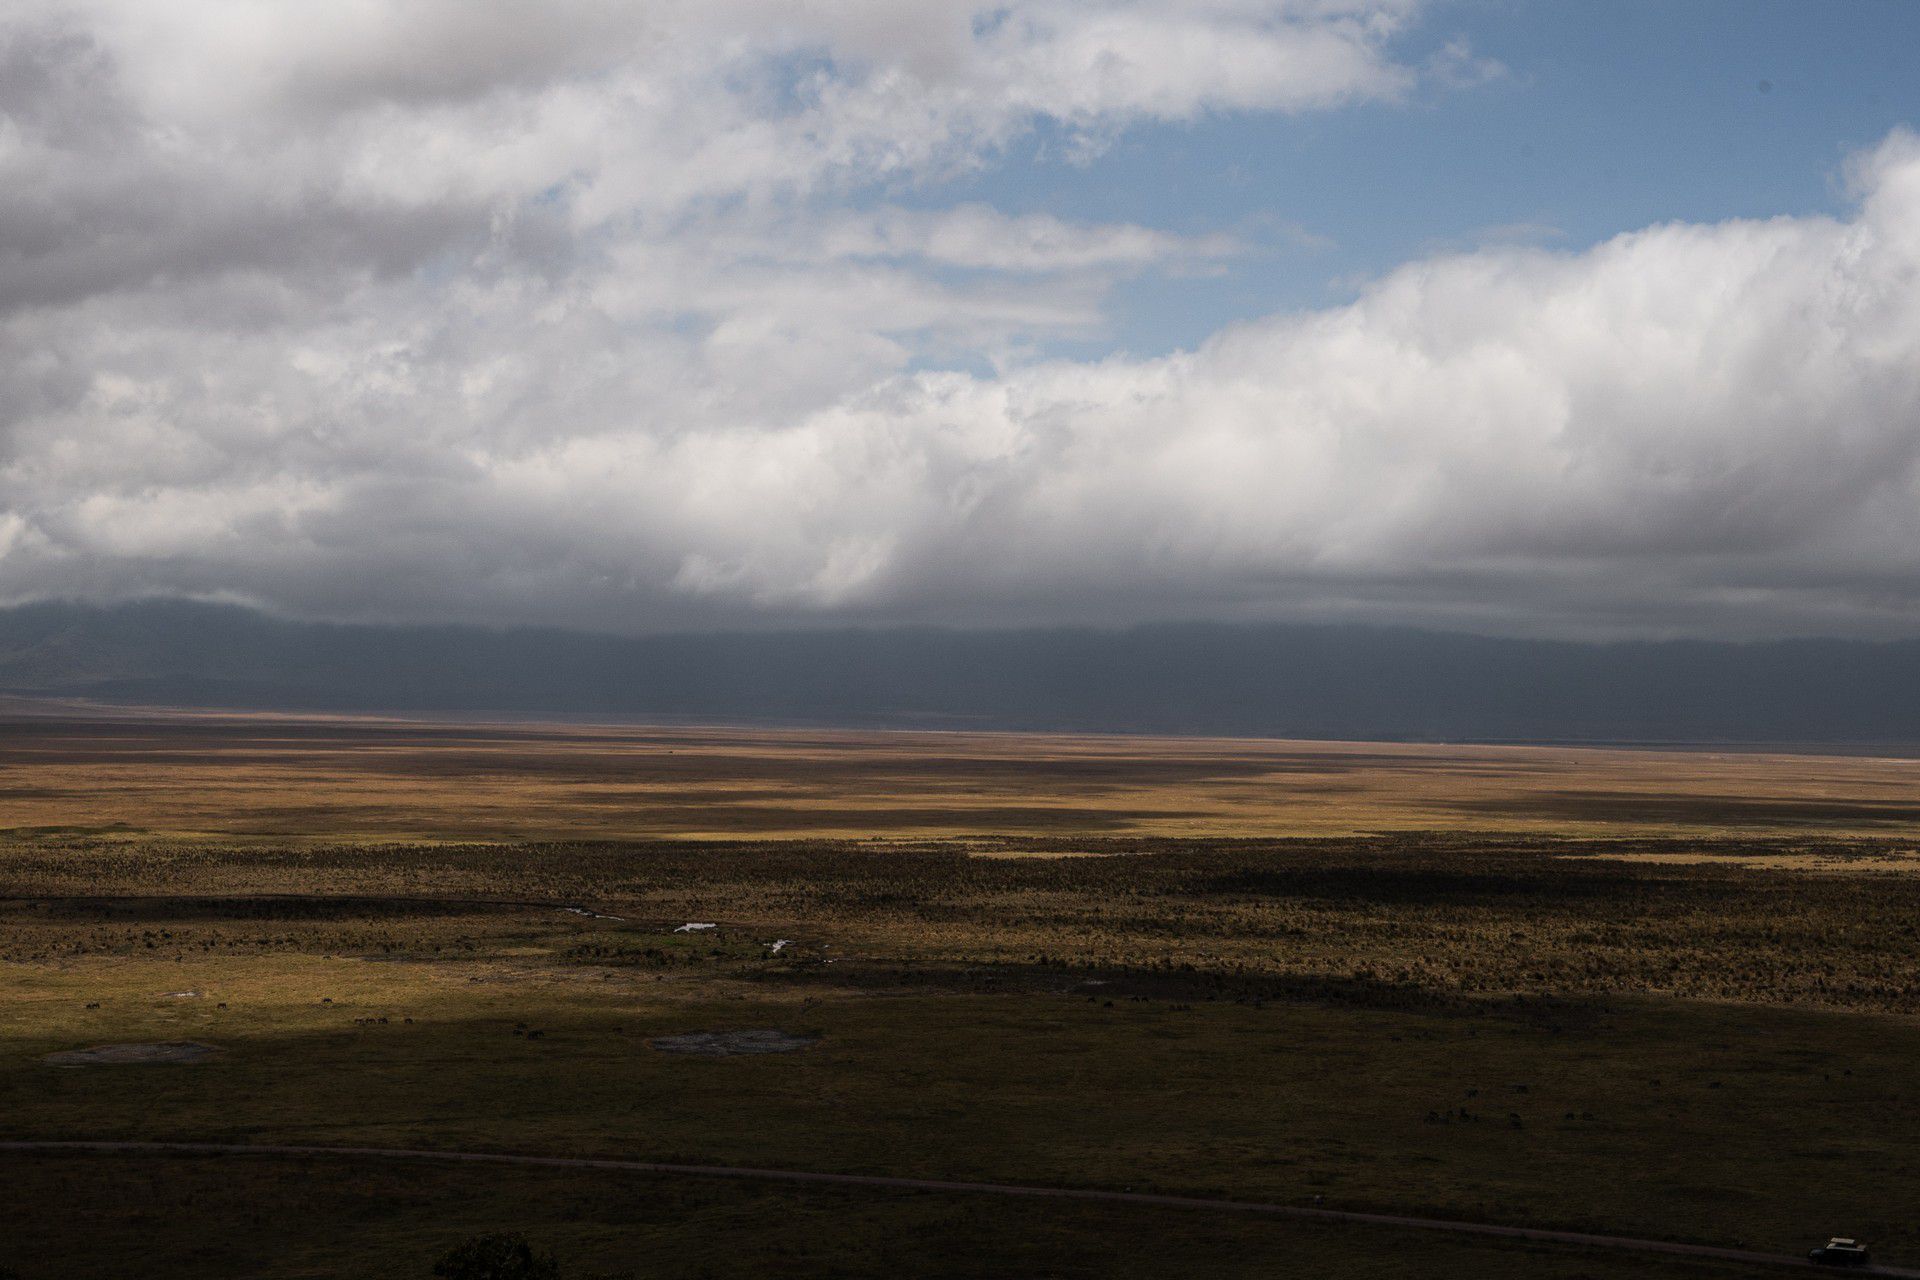 Plains at Ngorongoro Sanctuary, Tanzania. The Ngorongoro crater